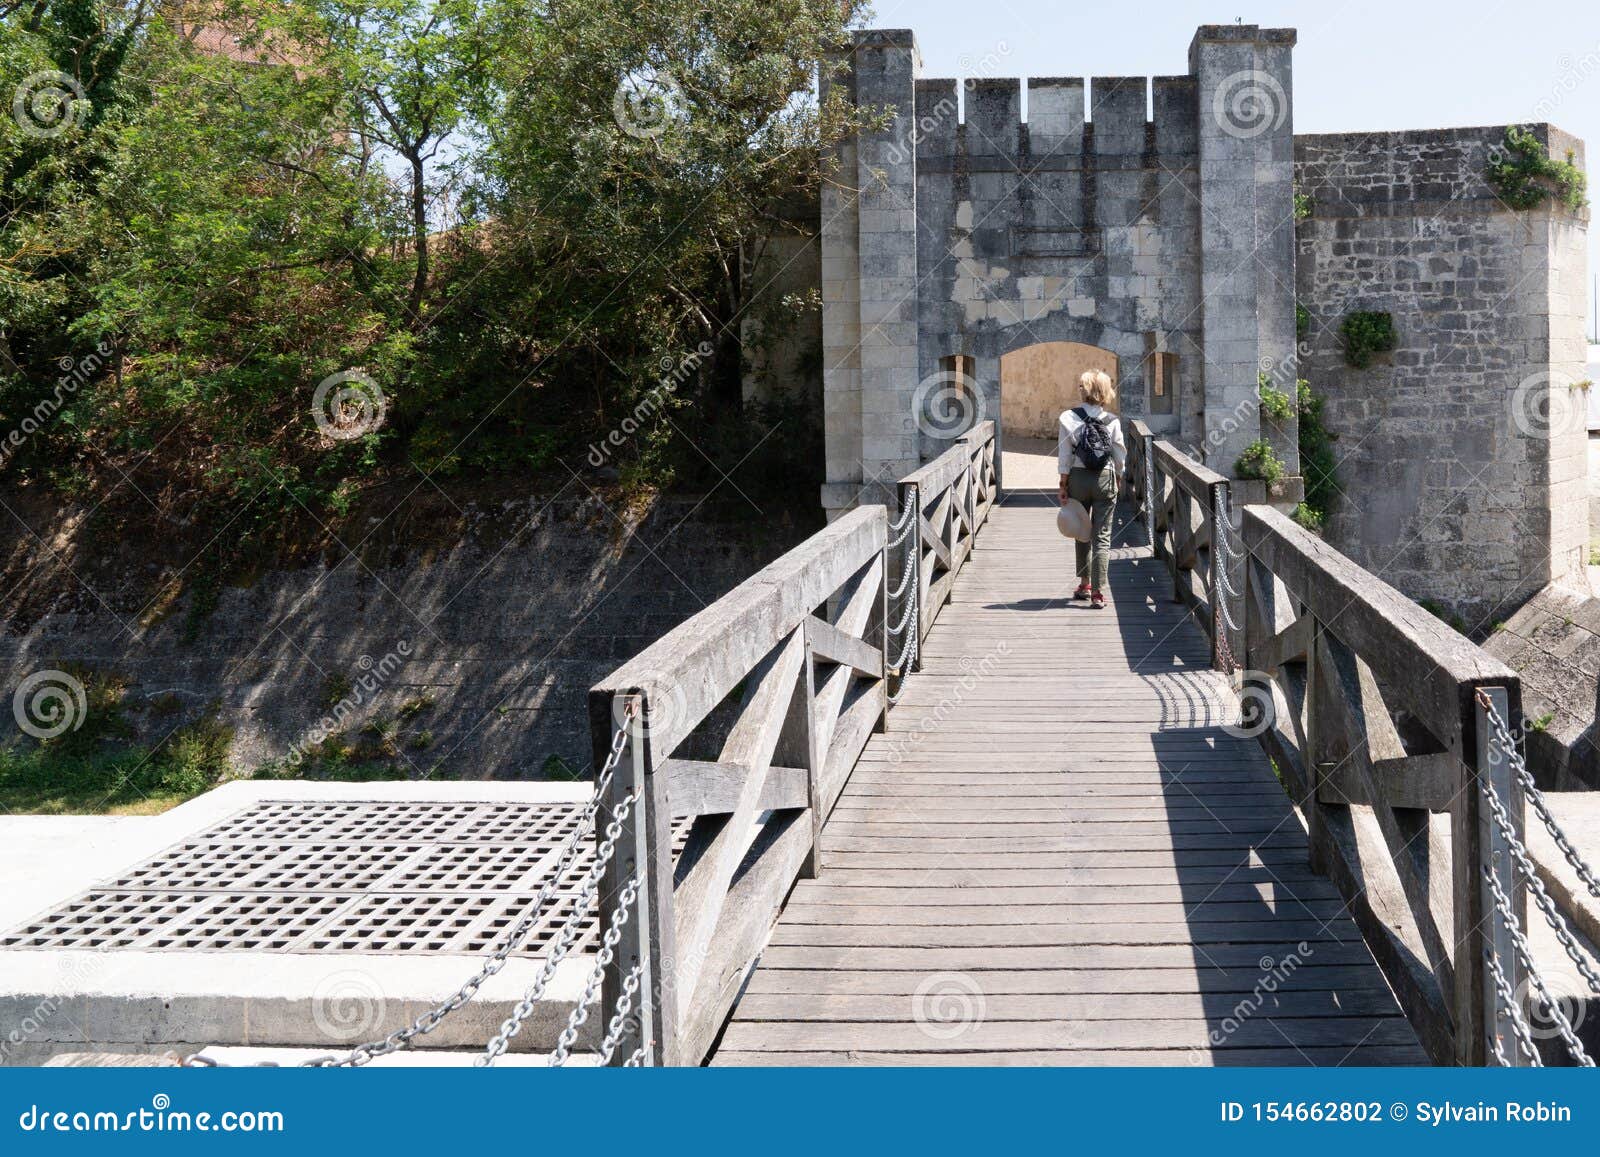 La Rochelle Ramparts Gate With Wooden Path Bridge Stock ...